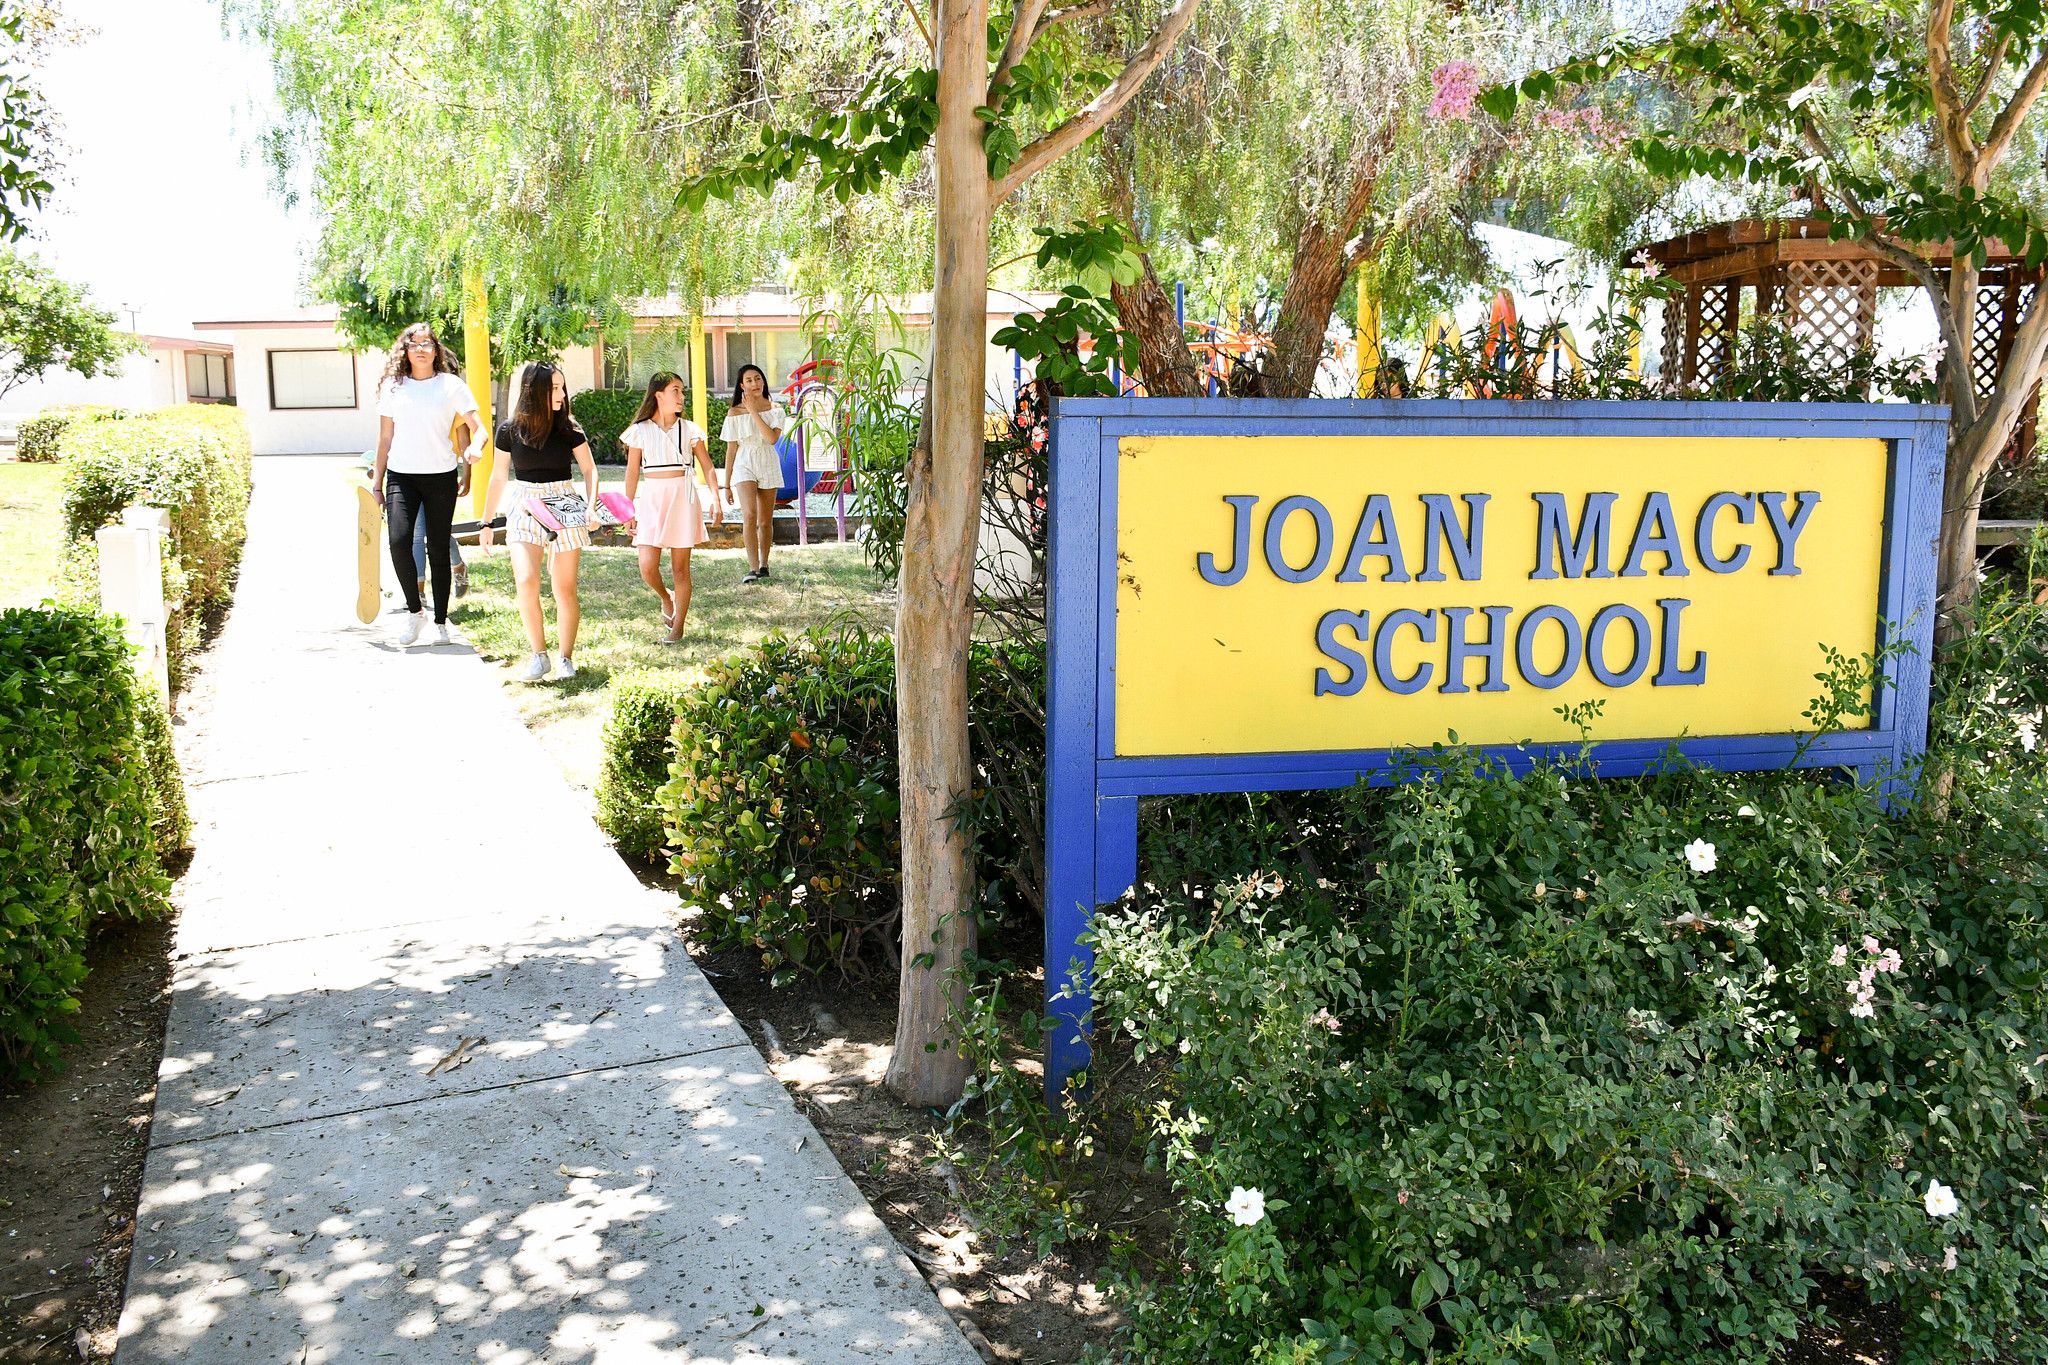 Joan Macy School Makes Learning Fun